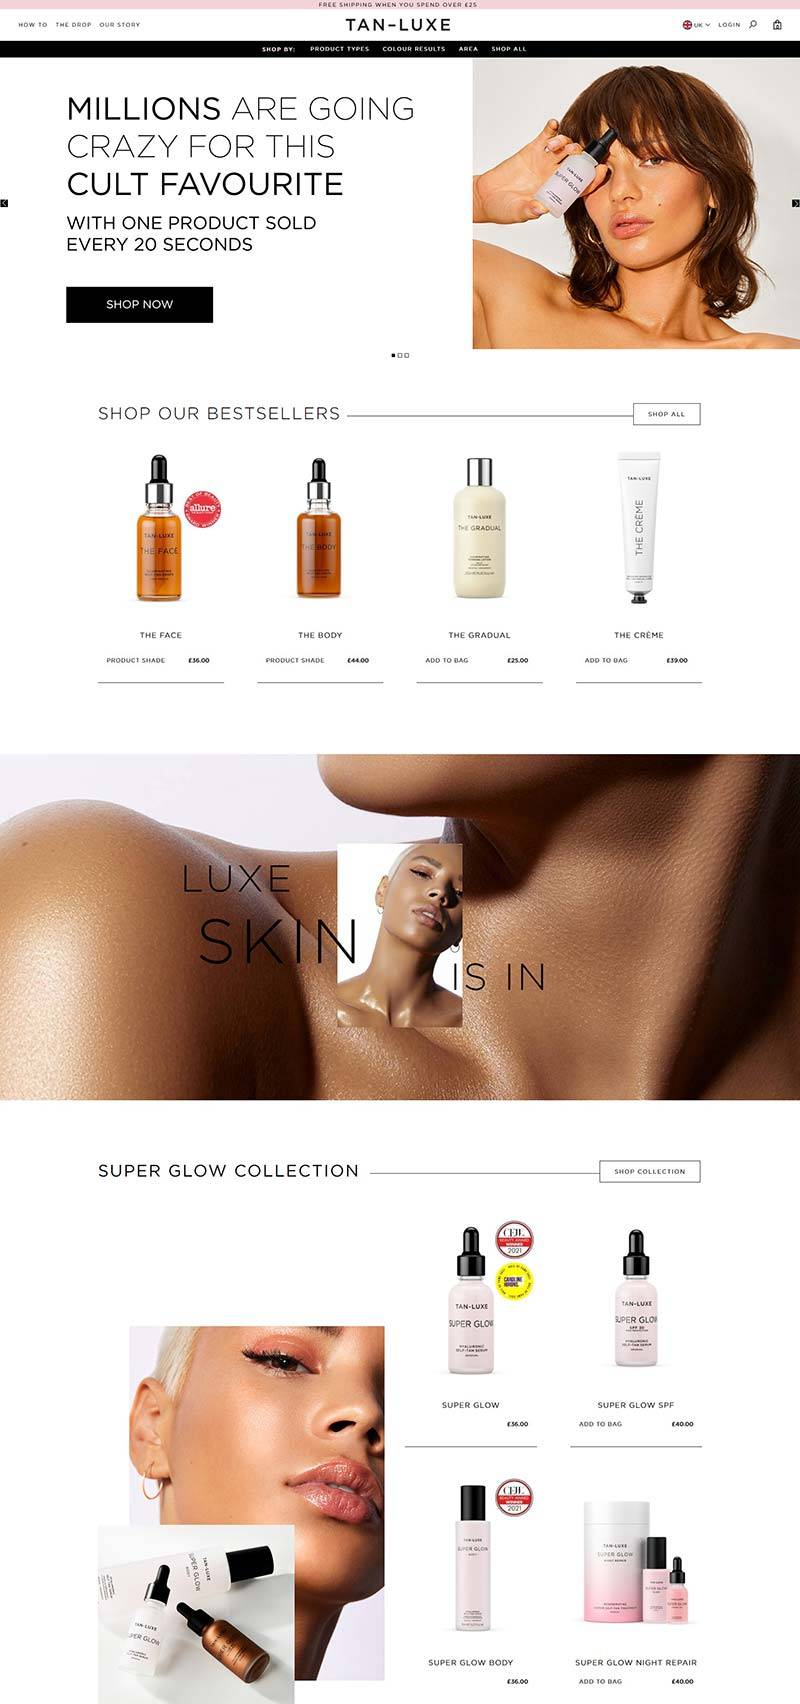 TAN-LUXE 英国天然美黑护肤品牌购物网站